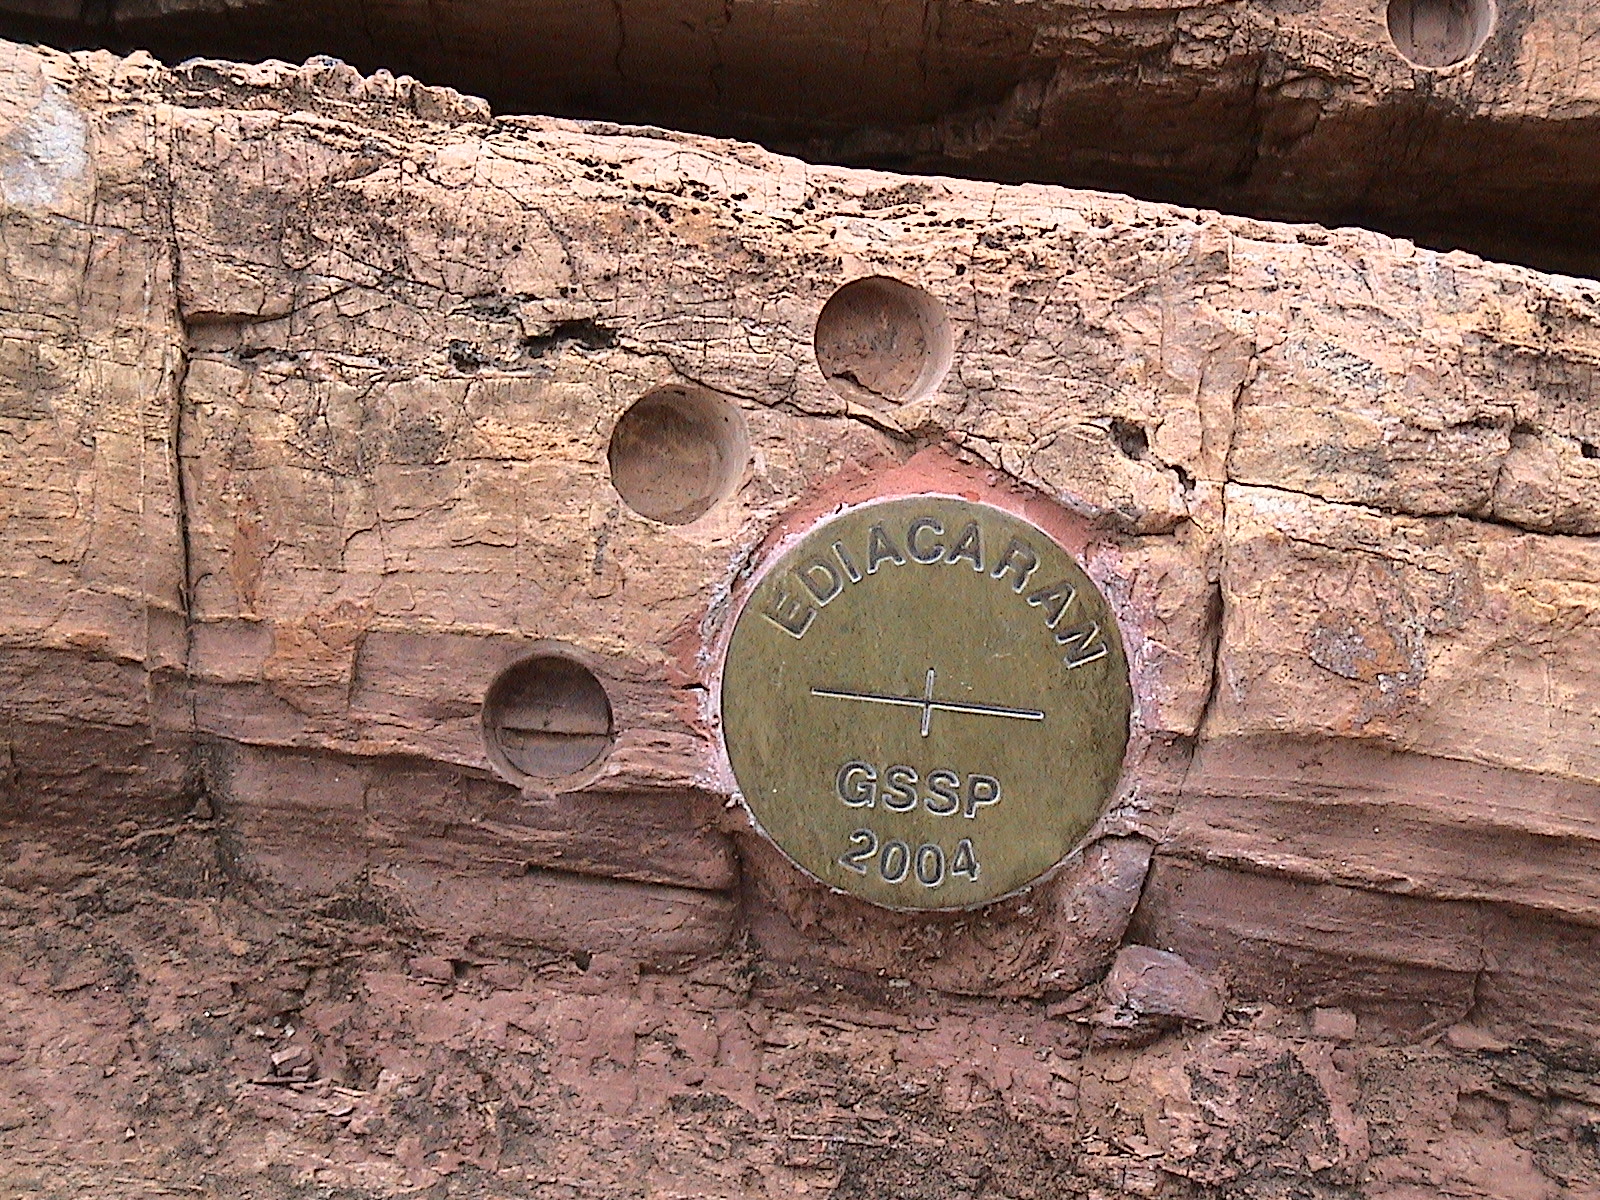 หมุดทองระบุตำแหน่งชุดหินอ้างอิง (GSSP) ของยุคเอเดียคาเรน (Ediacaran Period) ในประเทศออสเตรเลีย รอยวงกลมบนหินคือตำแหน่งที่เก็บตัวอย่างหินสำหรับการศึกษาการเปลี่ยนแปลงสนามแม่เหล็กโลก